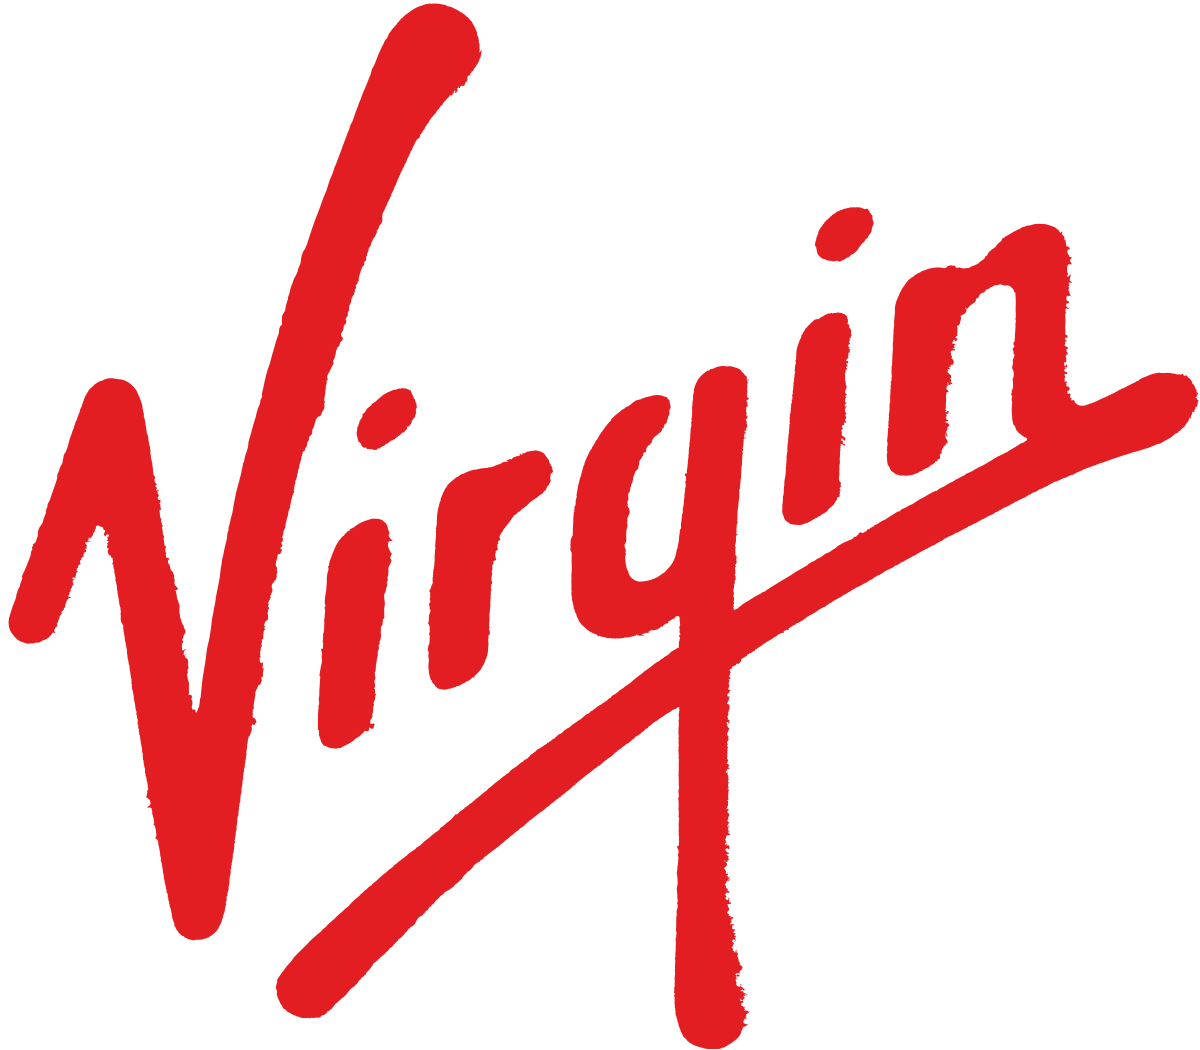 Virgin Hotels